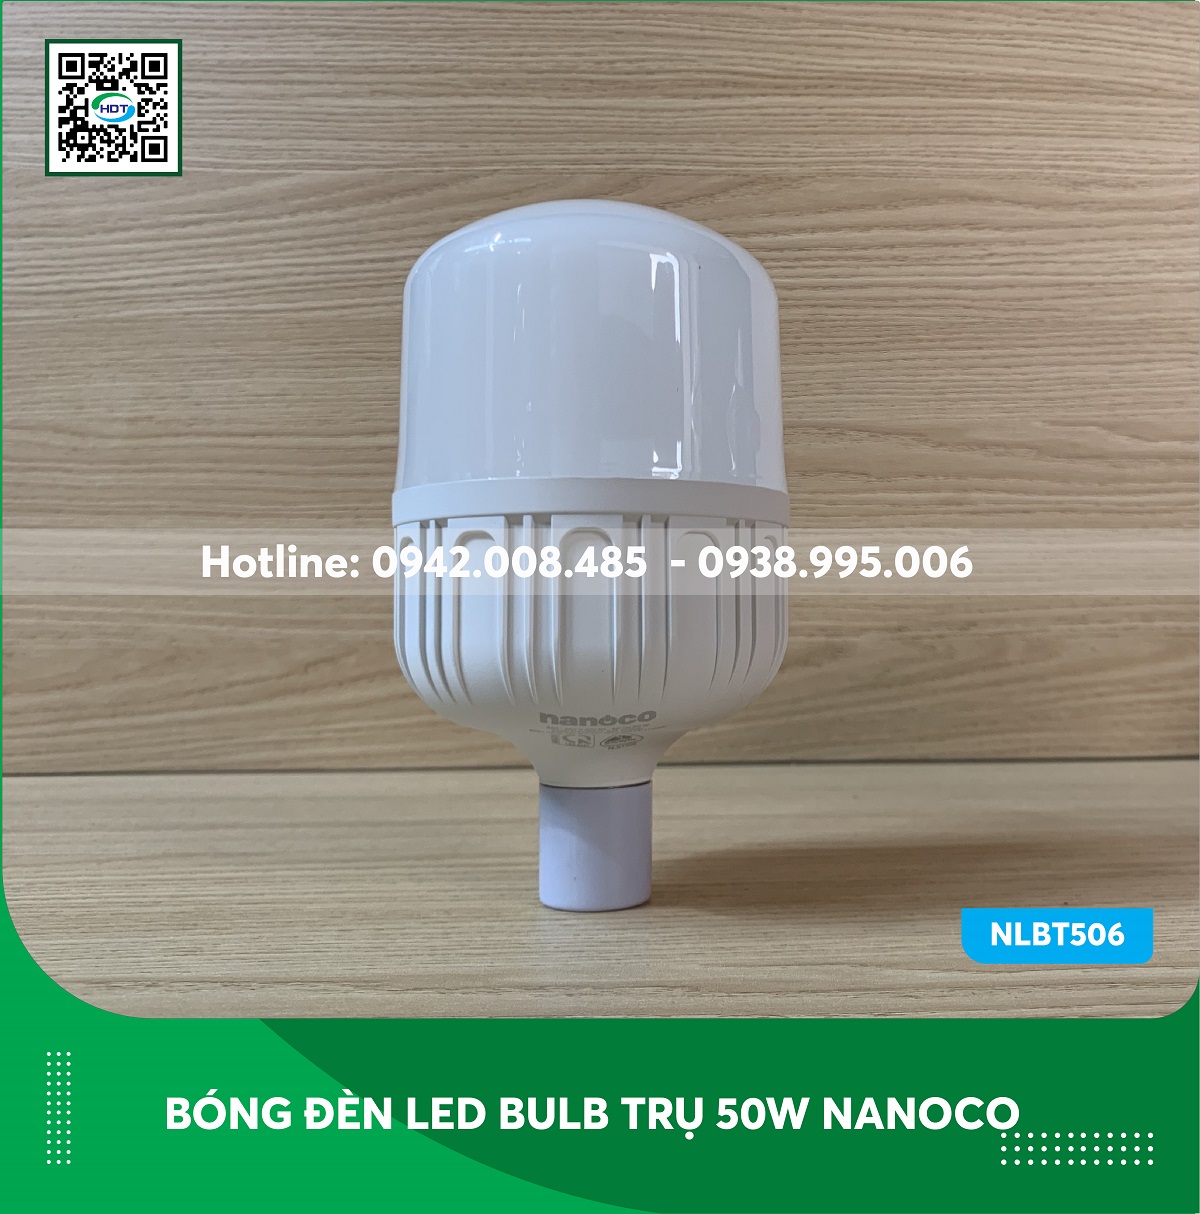 Bóng đèn led bulb trụ 50w Nanoco NLBT506